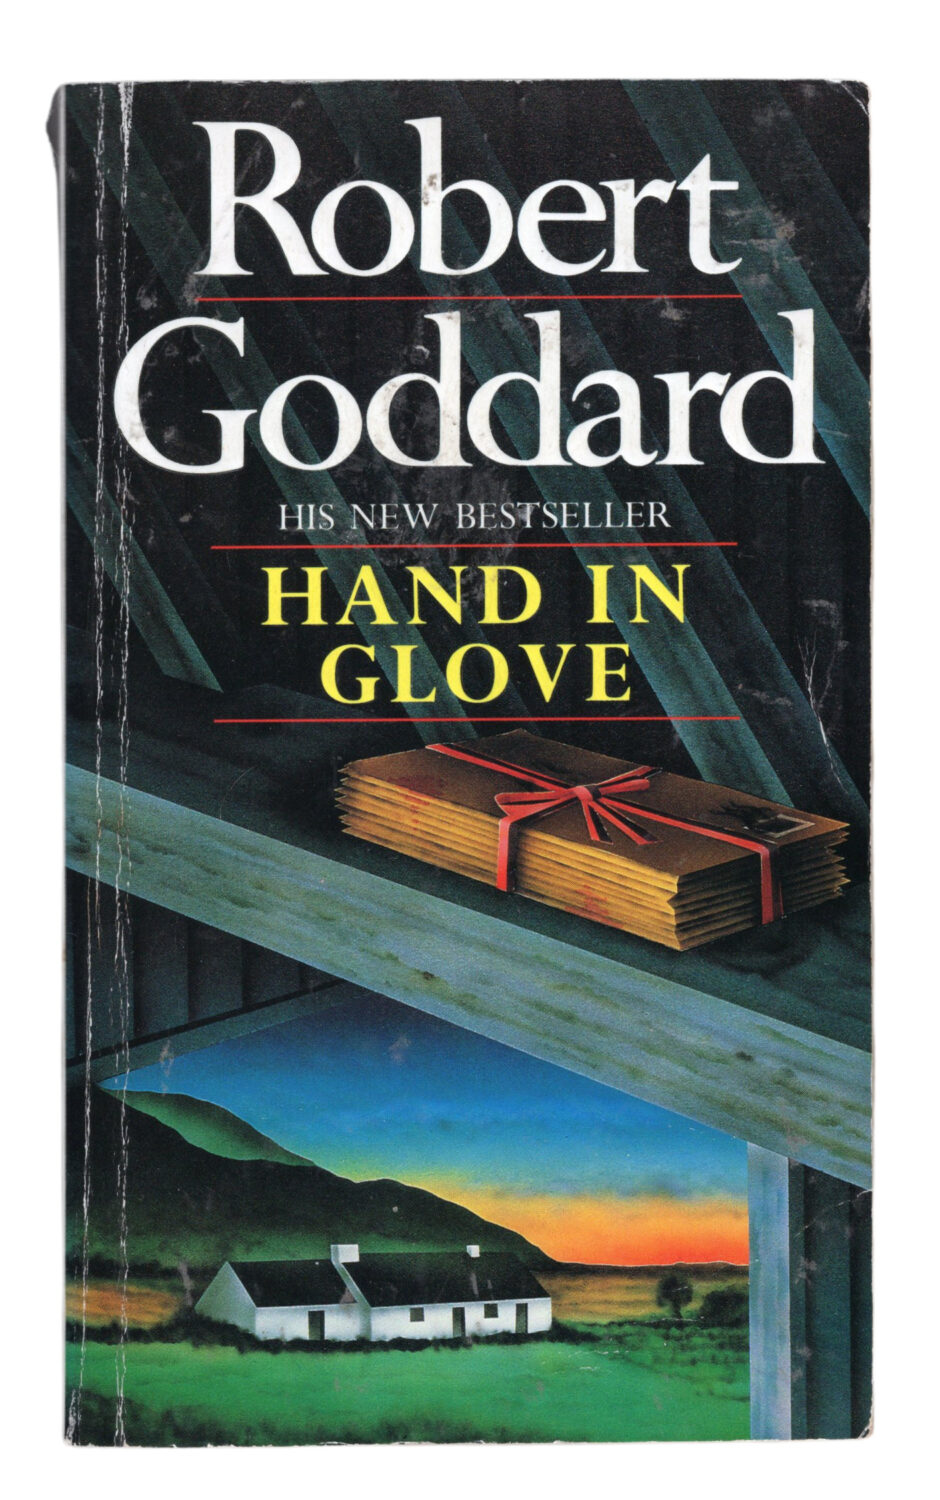 Robert Goddard - Hand in Glove